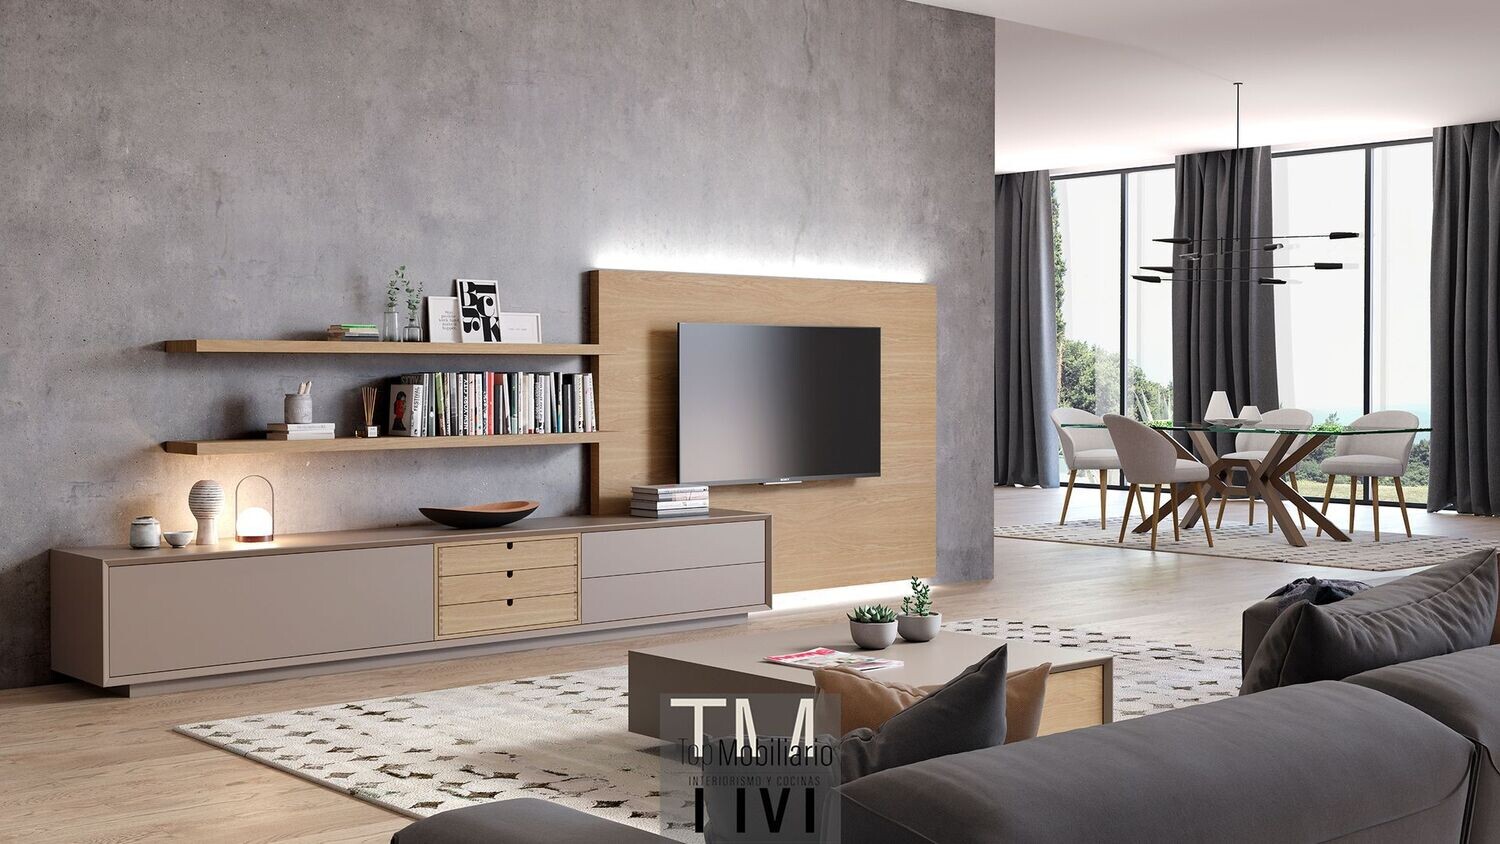 Composición de mueble bajo con trasera para TV